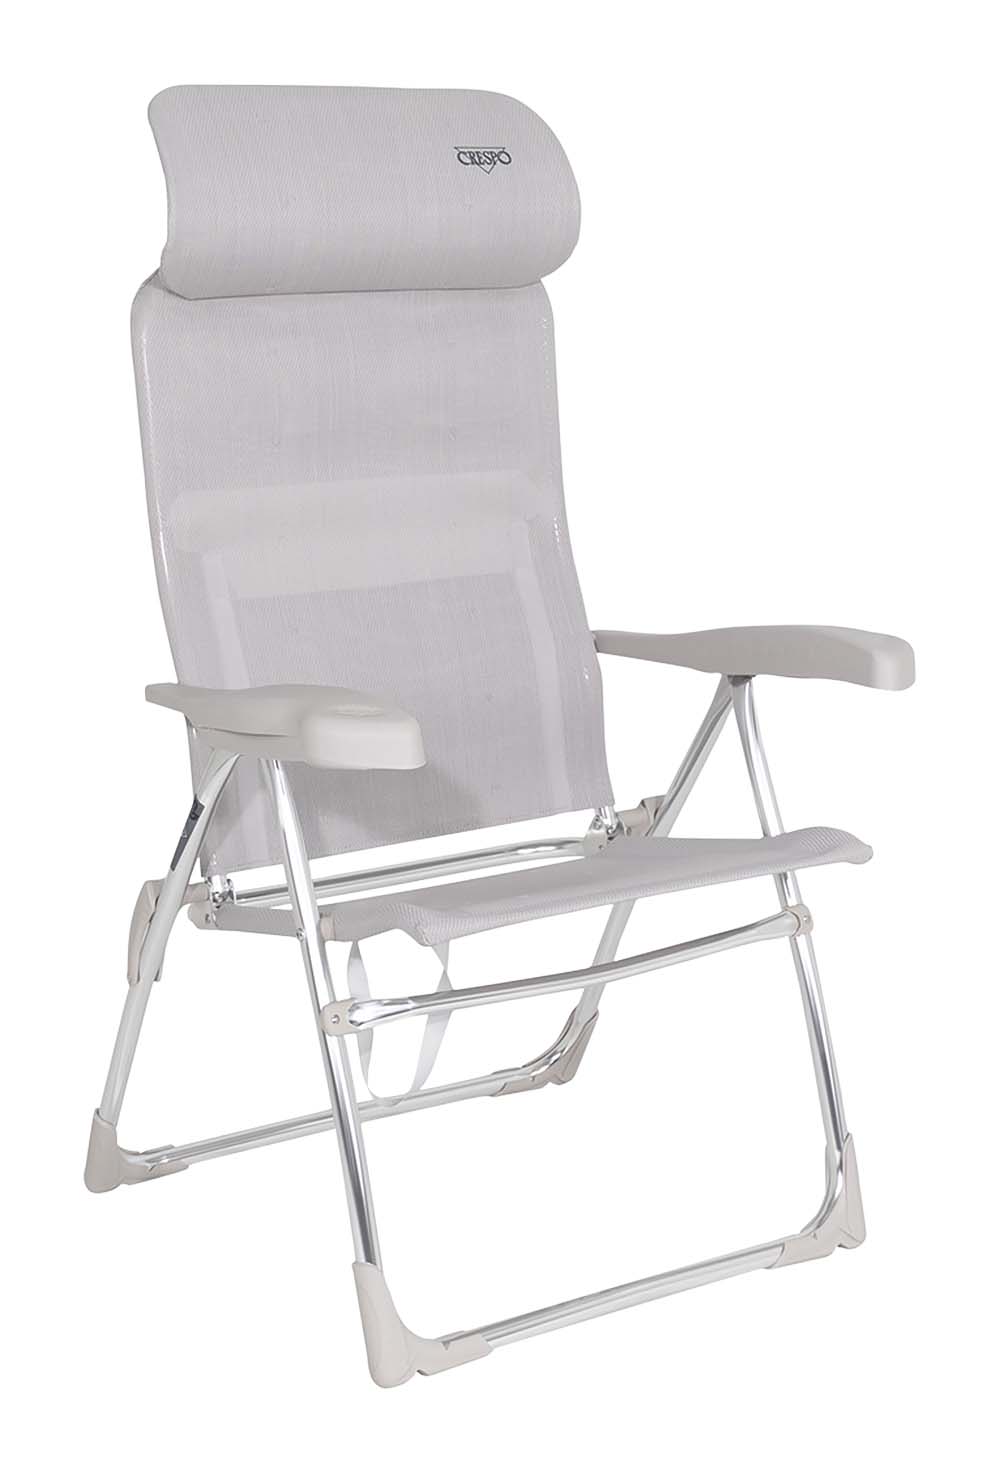 1149333 Een luxe en comfortabele strandstoel met een compact verstelbare hoofdsteun. Ideaal voor gebruik op het strand, voor de tent of voor onderweg. Deze stoel is verstelbaar in 7 standen. Daarnaast is deze strandstoel voorzien van comfortabele armleuningen. Deze stoel is zeer compact en mede door de draaglussen gemakkelijk mee te nemen.